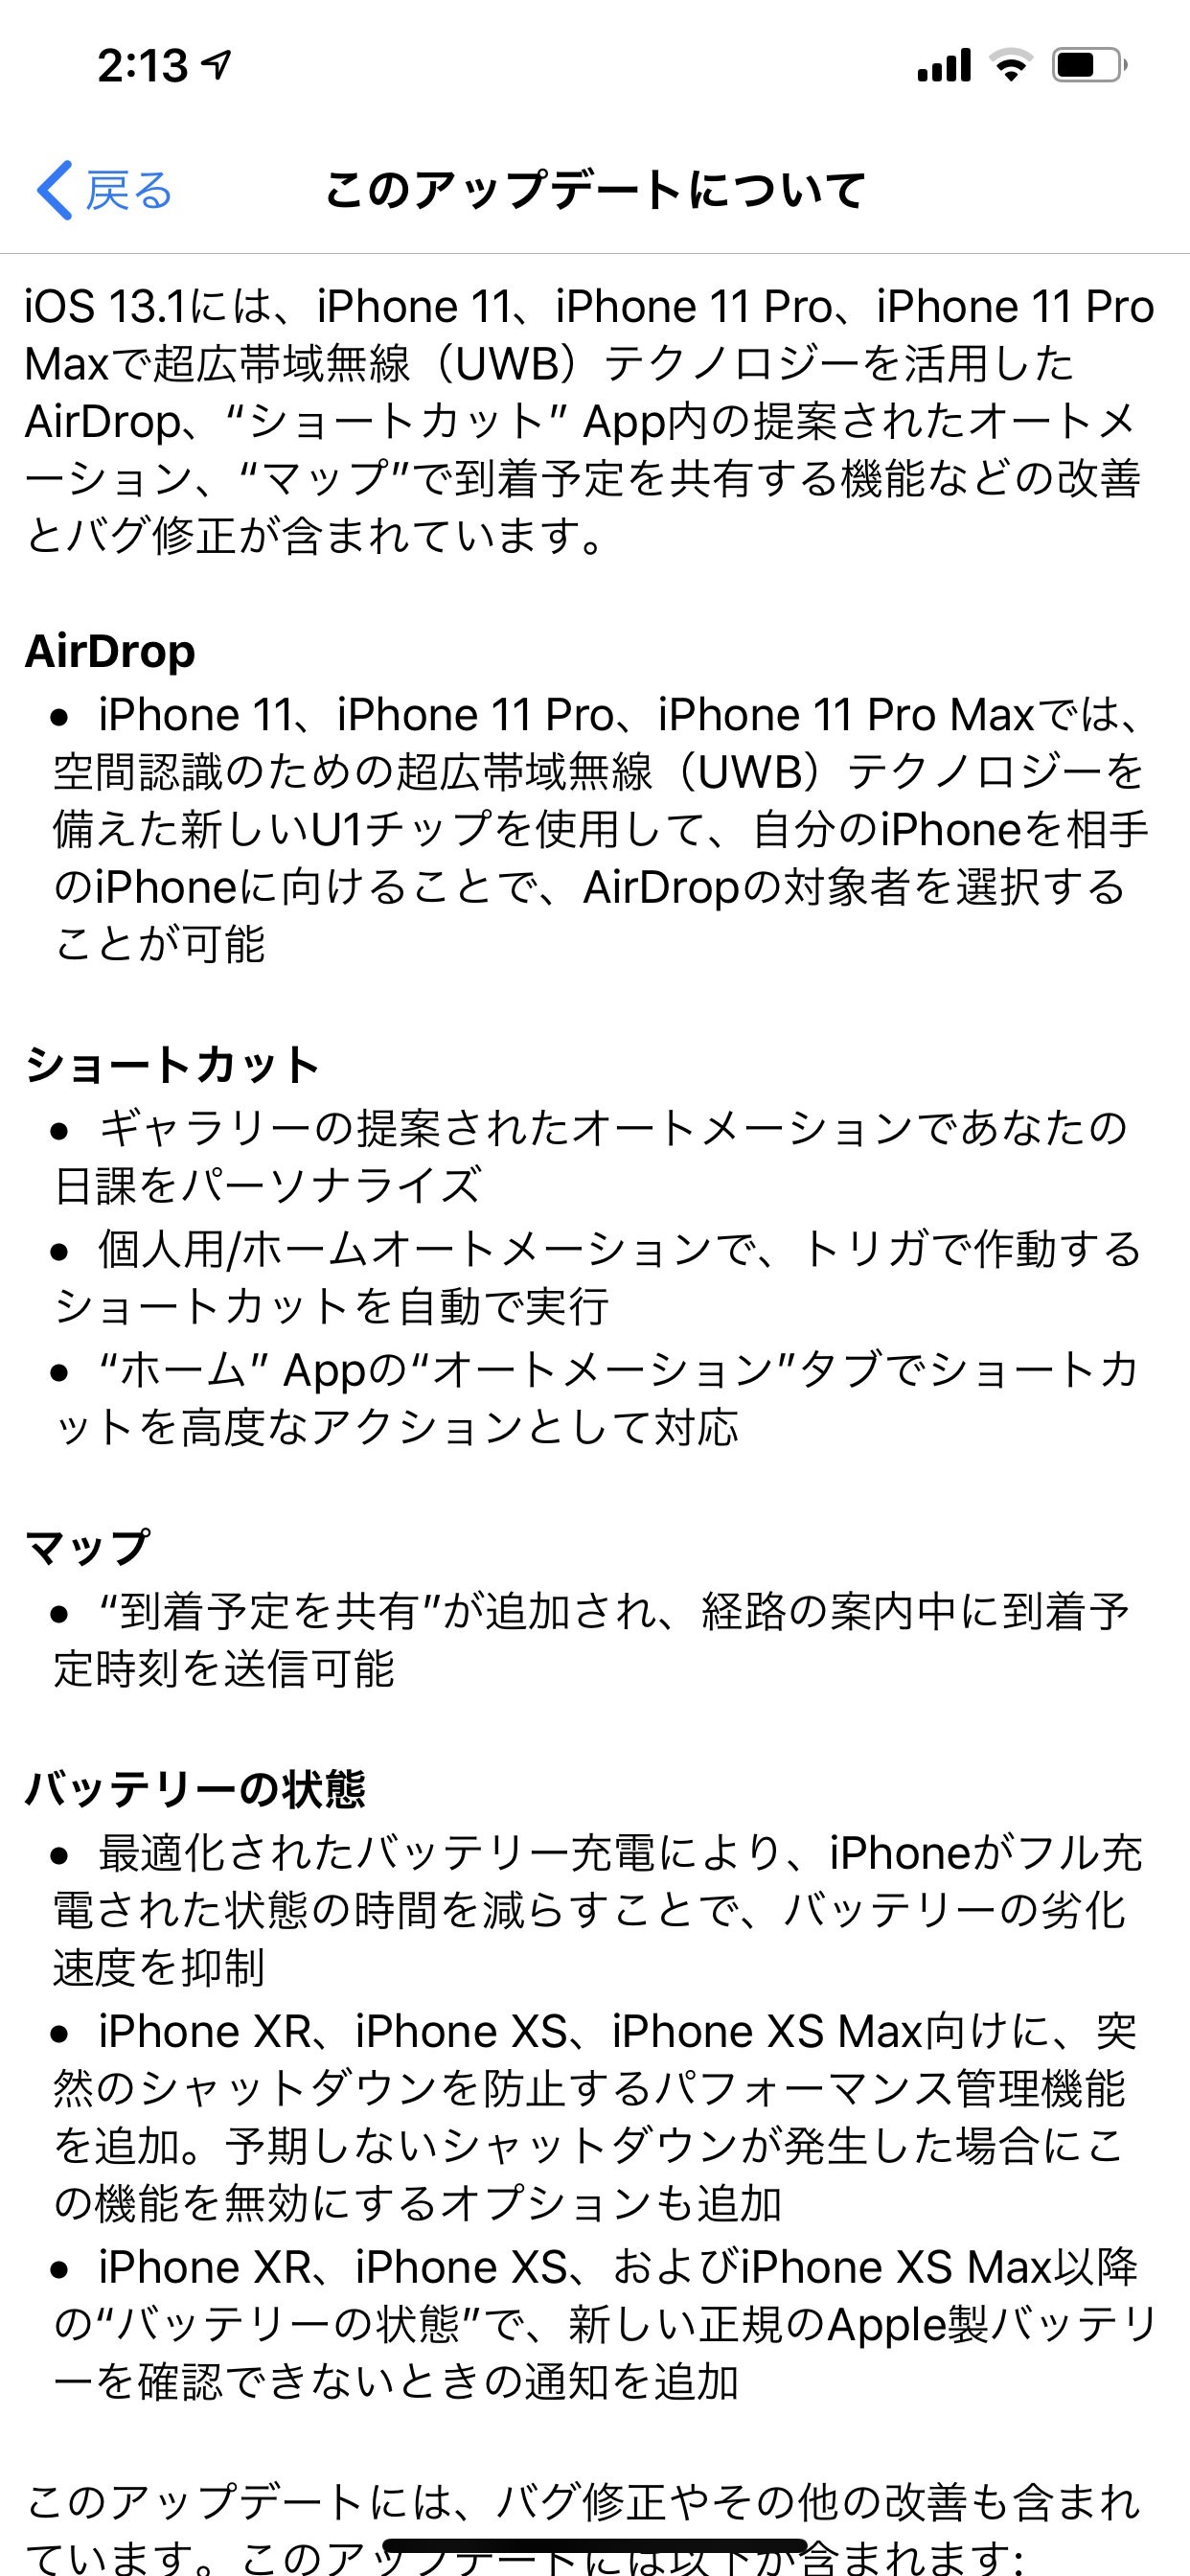 様々な機能改善とバグ修正が含まれる「iOS 13.1 ソフトウェア・アップデート」リリース